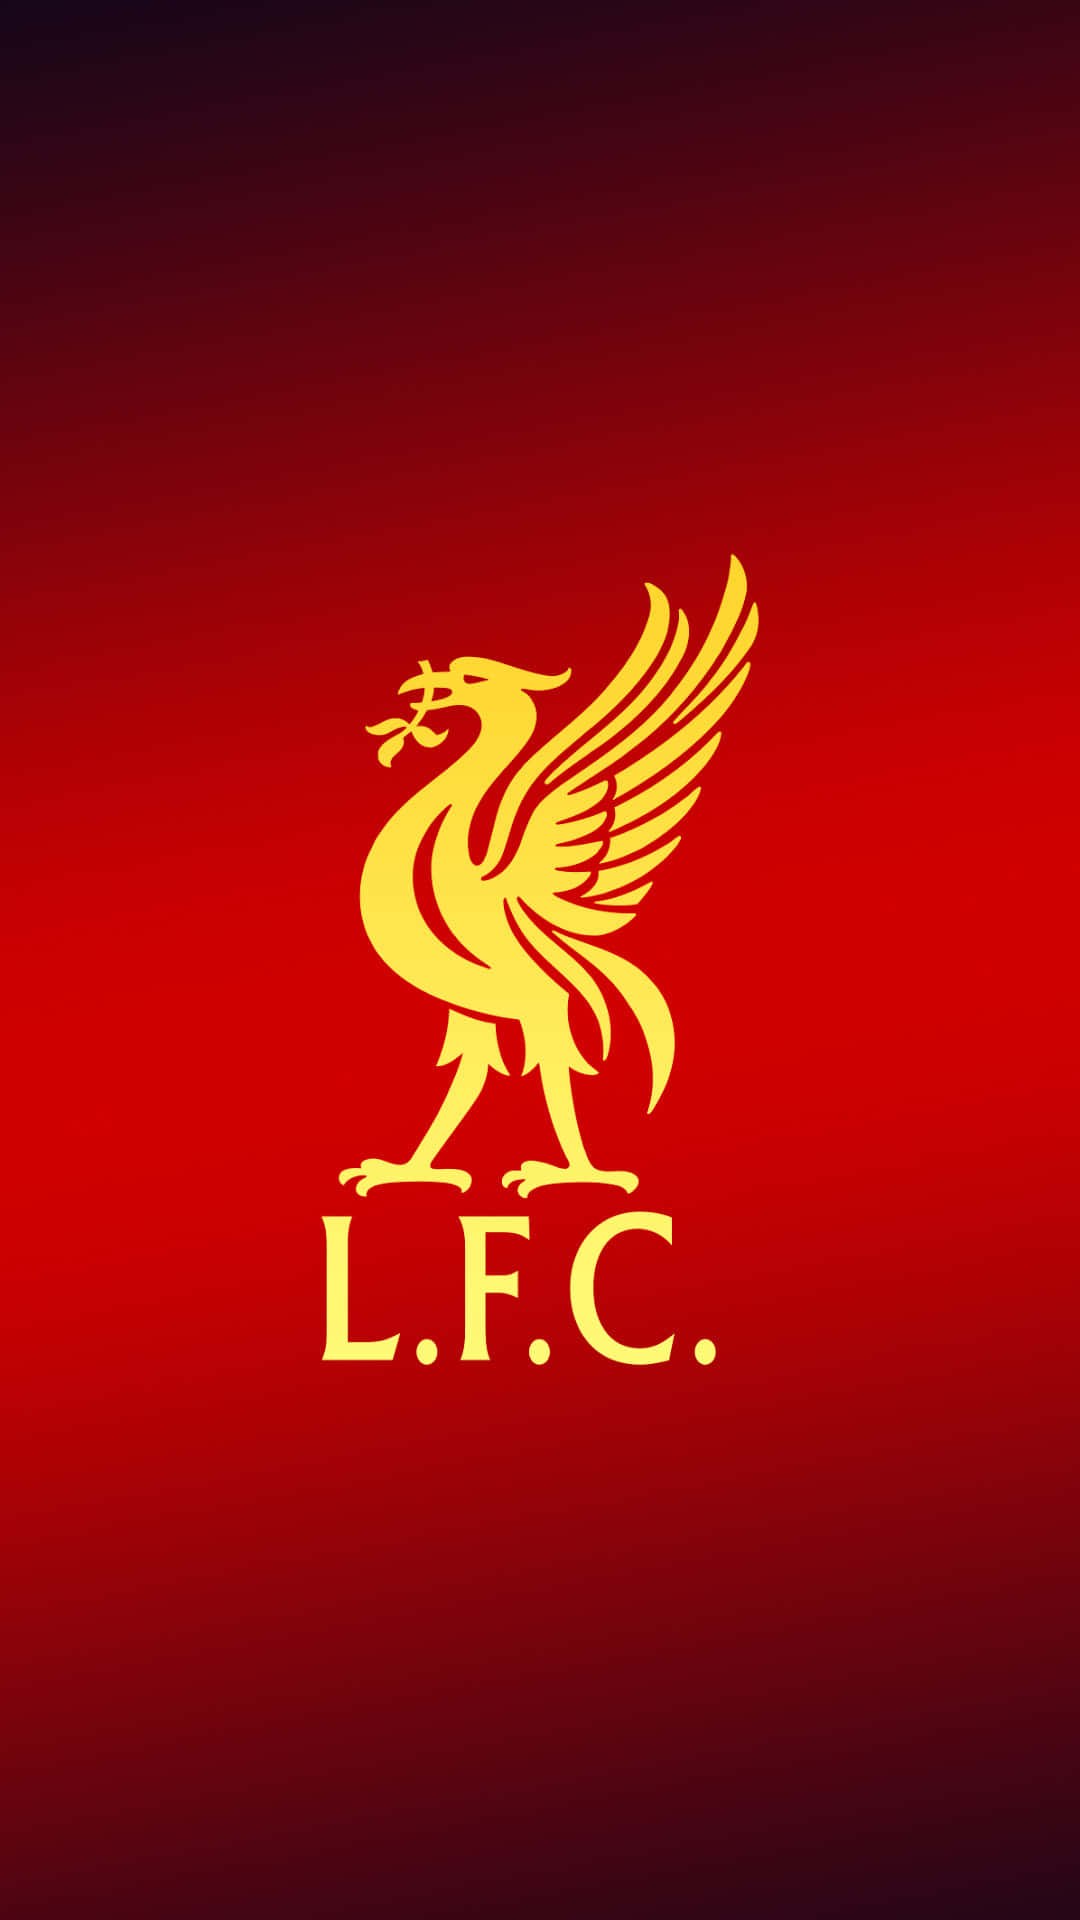 Celebreo Sucesso Do Clube Da Epl, Liverpool Fc, Com Este Iphone 11 Exclusivo Temático Do Liverpool Fc. Papel de Parede